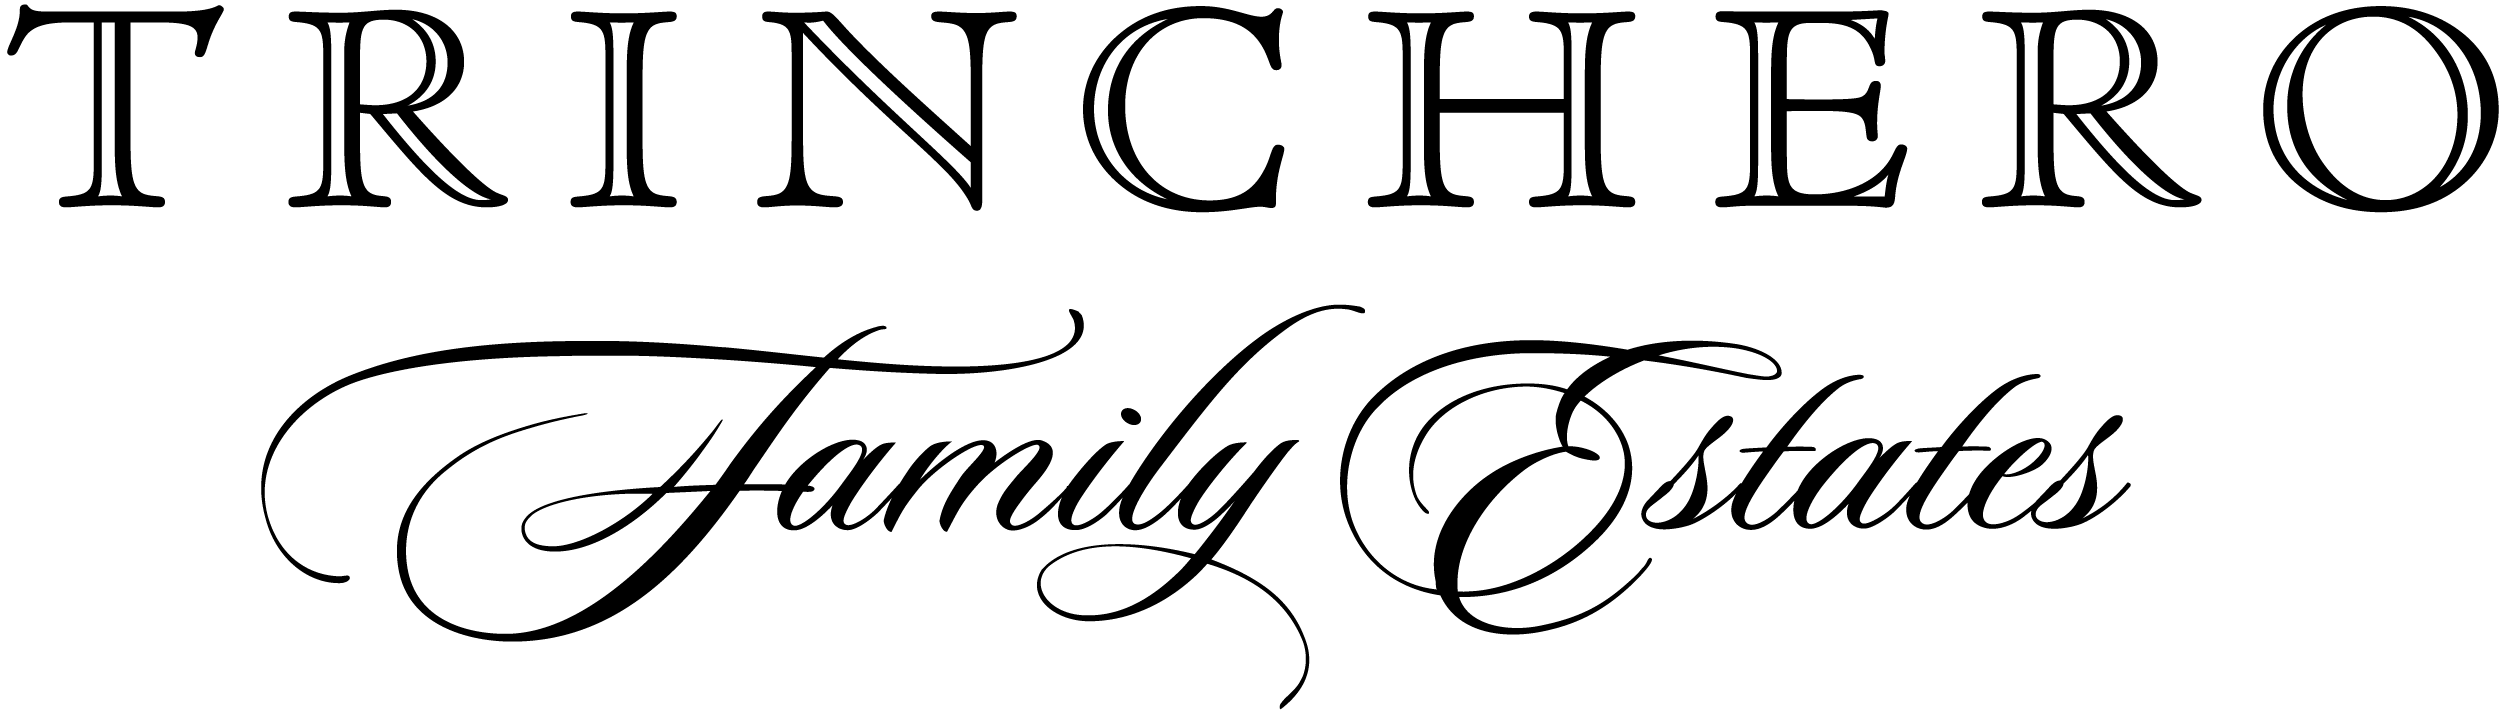 Trinchero Family Estates Black_White PNG Logo